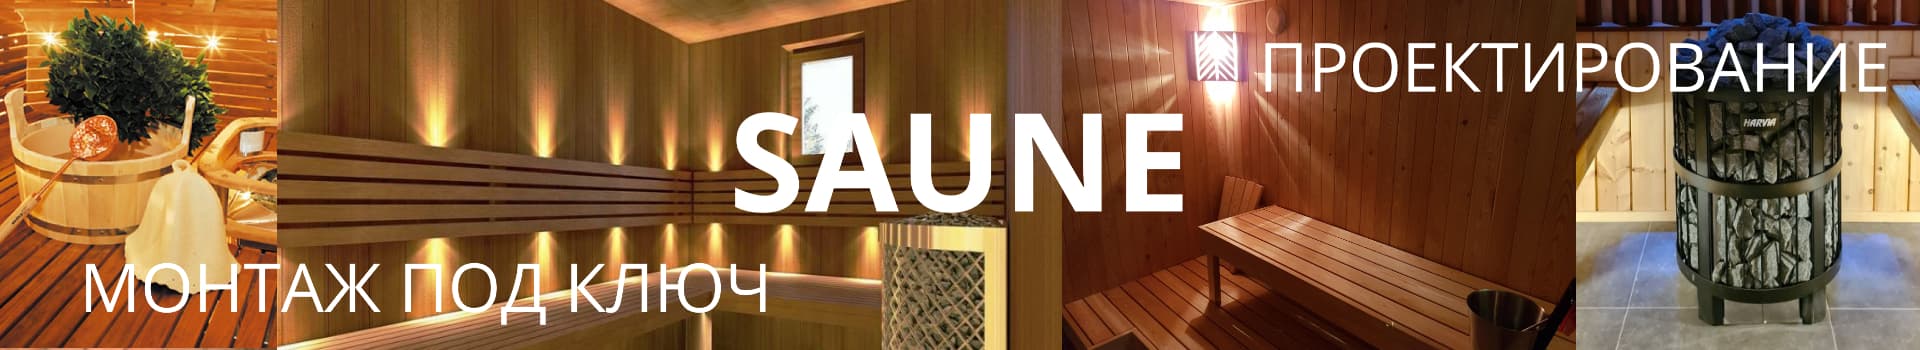 Sve za Saune: Električne peći  Peći na drva  Upravljačke ploče za saune sa električnim grijačima  Kamenje za saune  Lamperija za saune  Vrata za saune  Klupe  Lepljene grede  Rasveta za saune  Sauna rekviziti  Oprema za izgradnju saune  Sredstva za čišćenje i zaštitu sauna